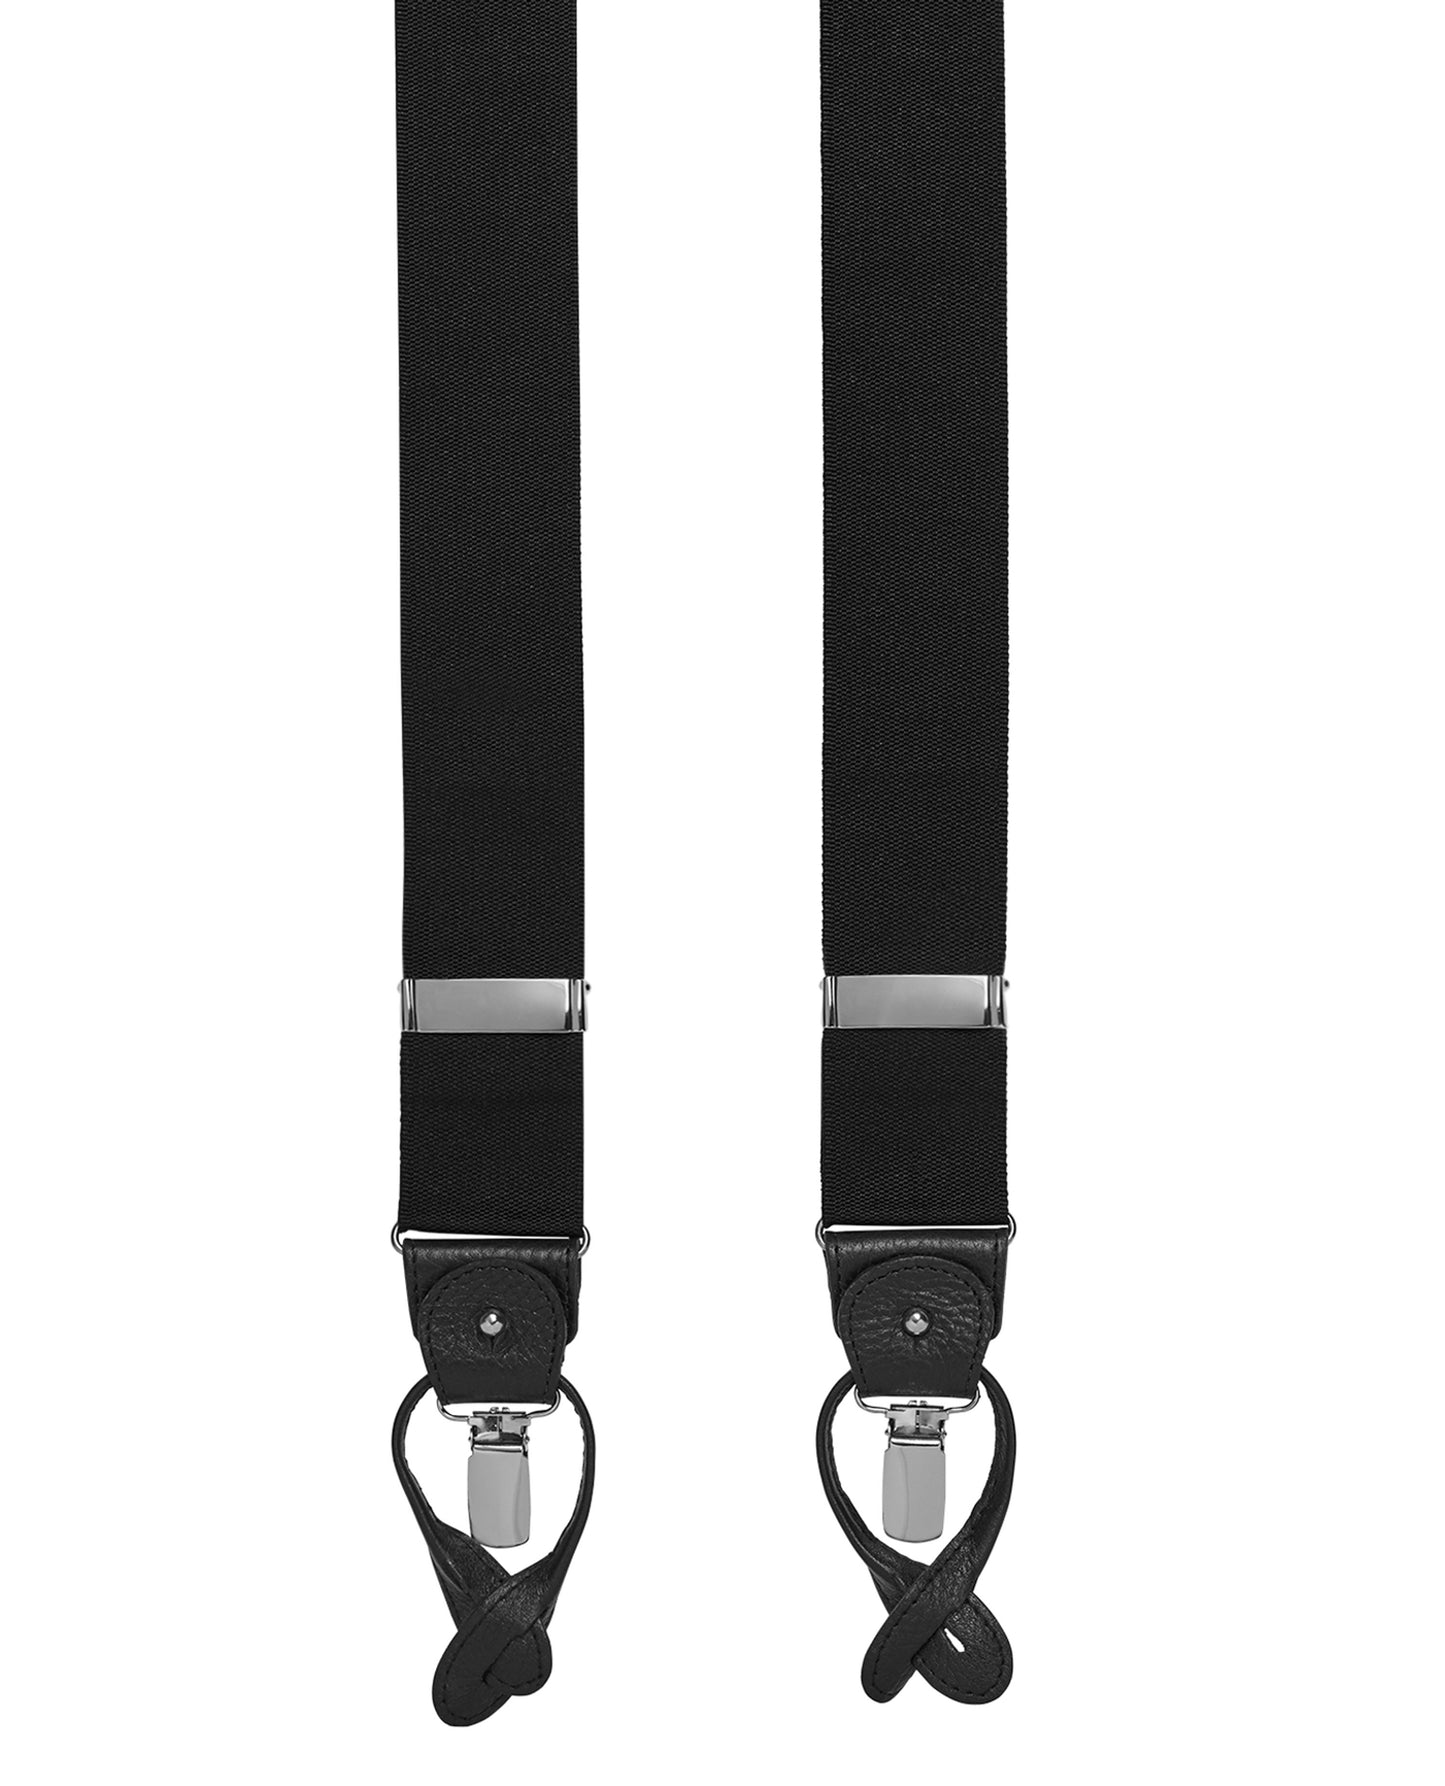 Image 2 of Dual End Black Braces